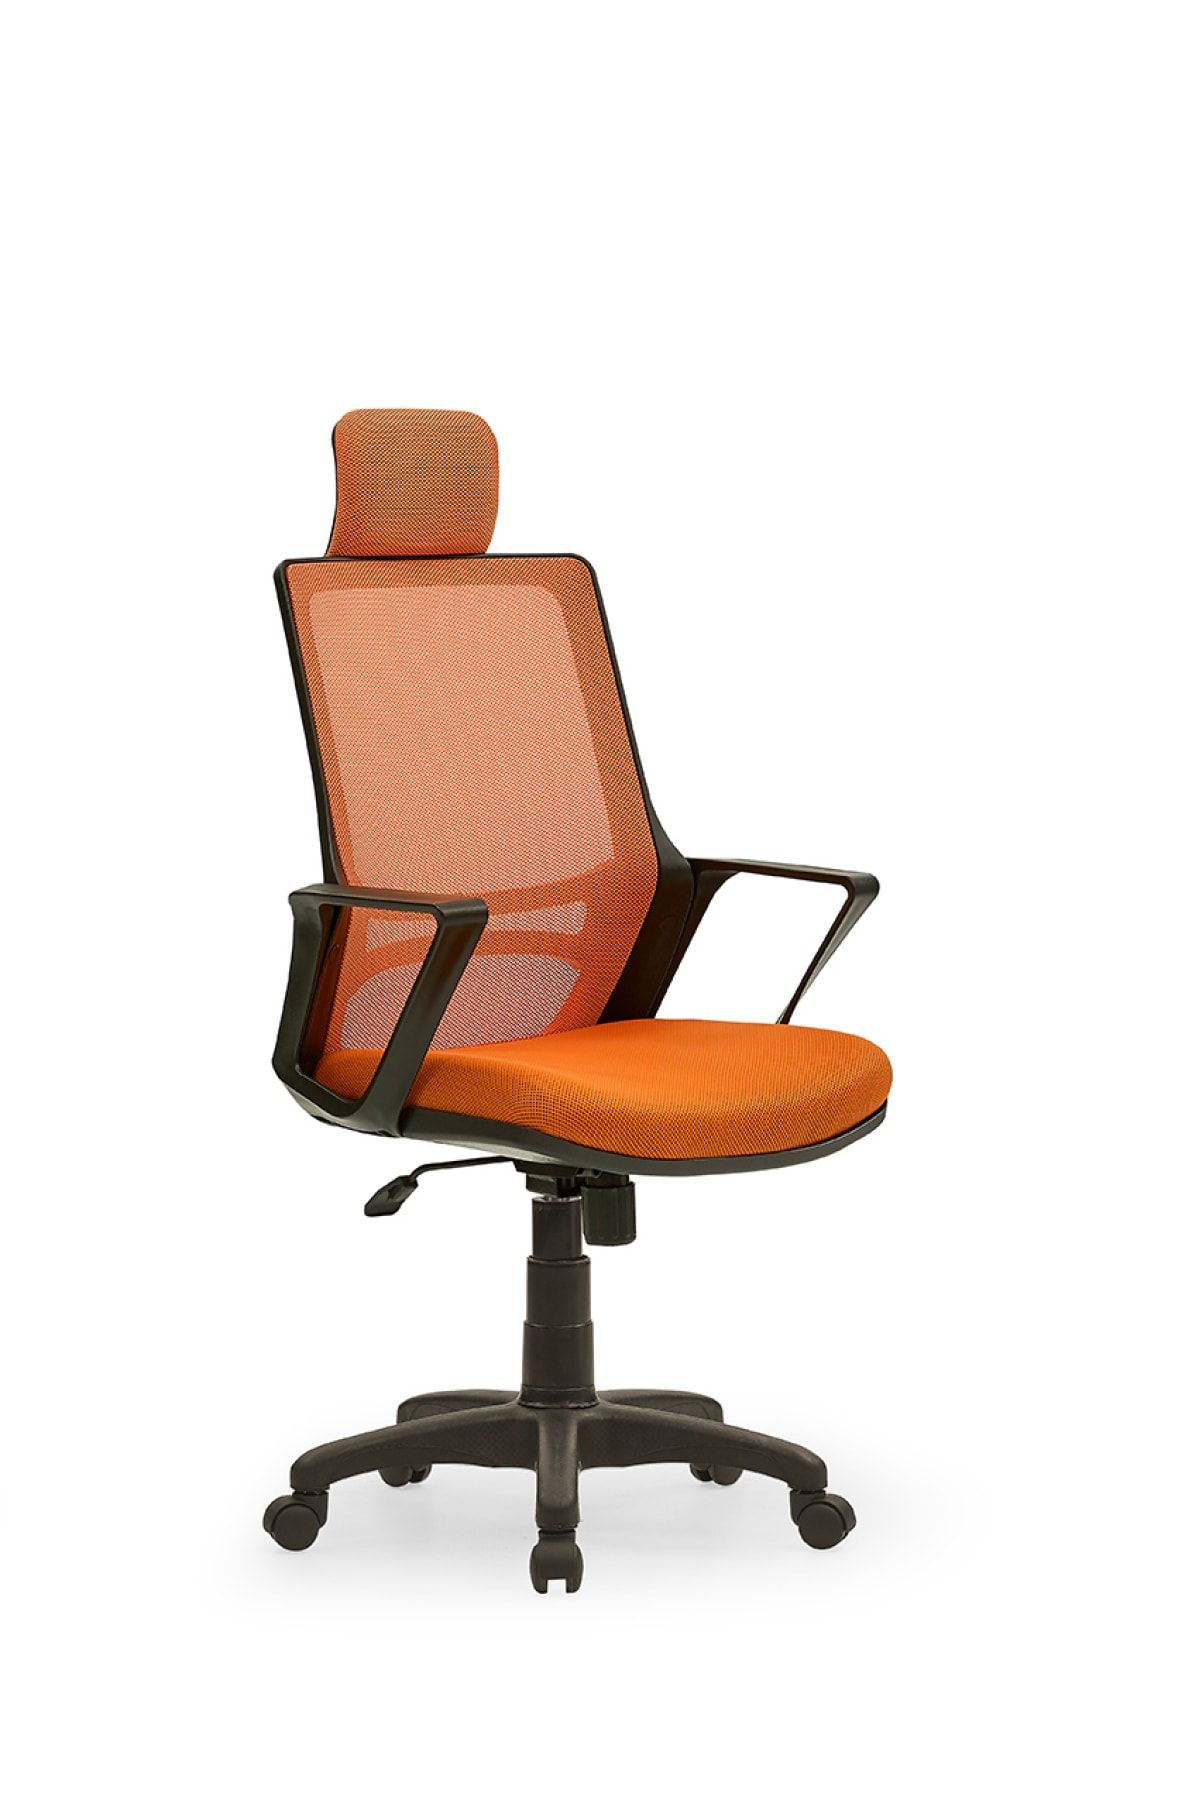 MEHMET YAREN BURO Arya3 Bilgisayar Koltuğu - Ofis - Müdür - Büro - Çalışma Sandalyesi Turuncu Renk Plastik Ayaklı